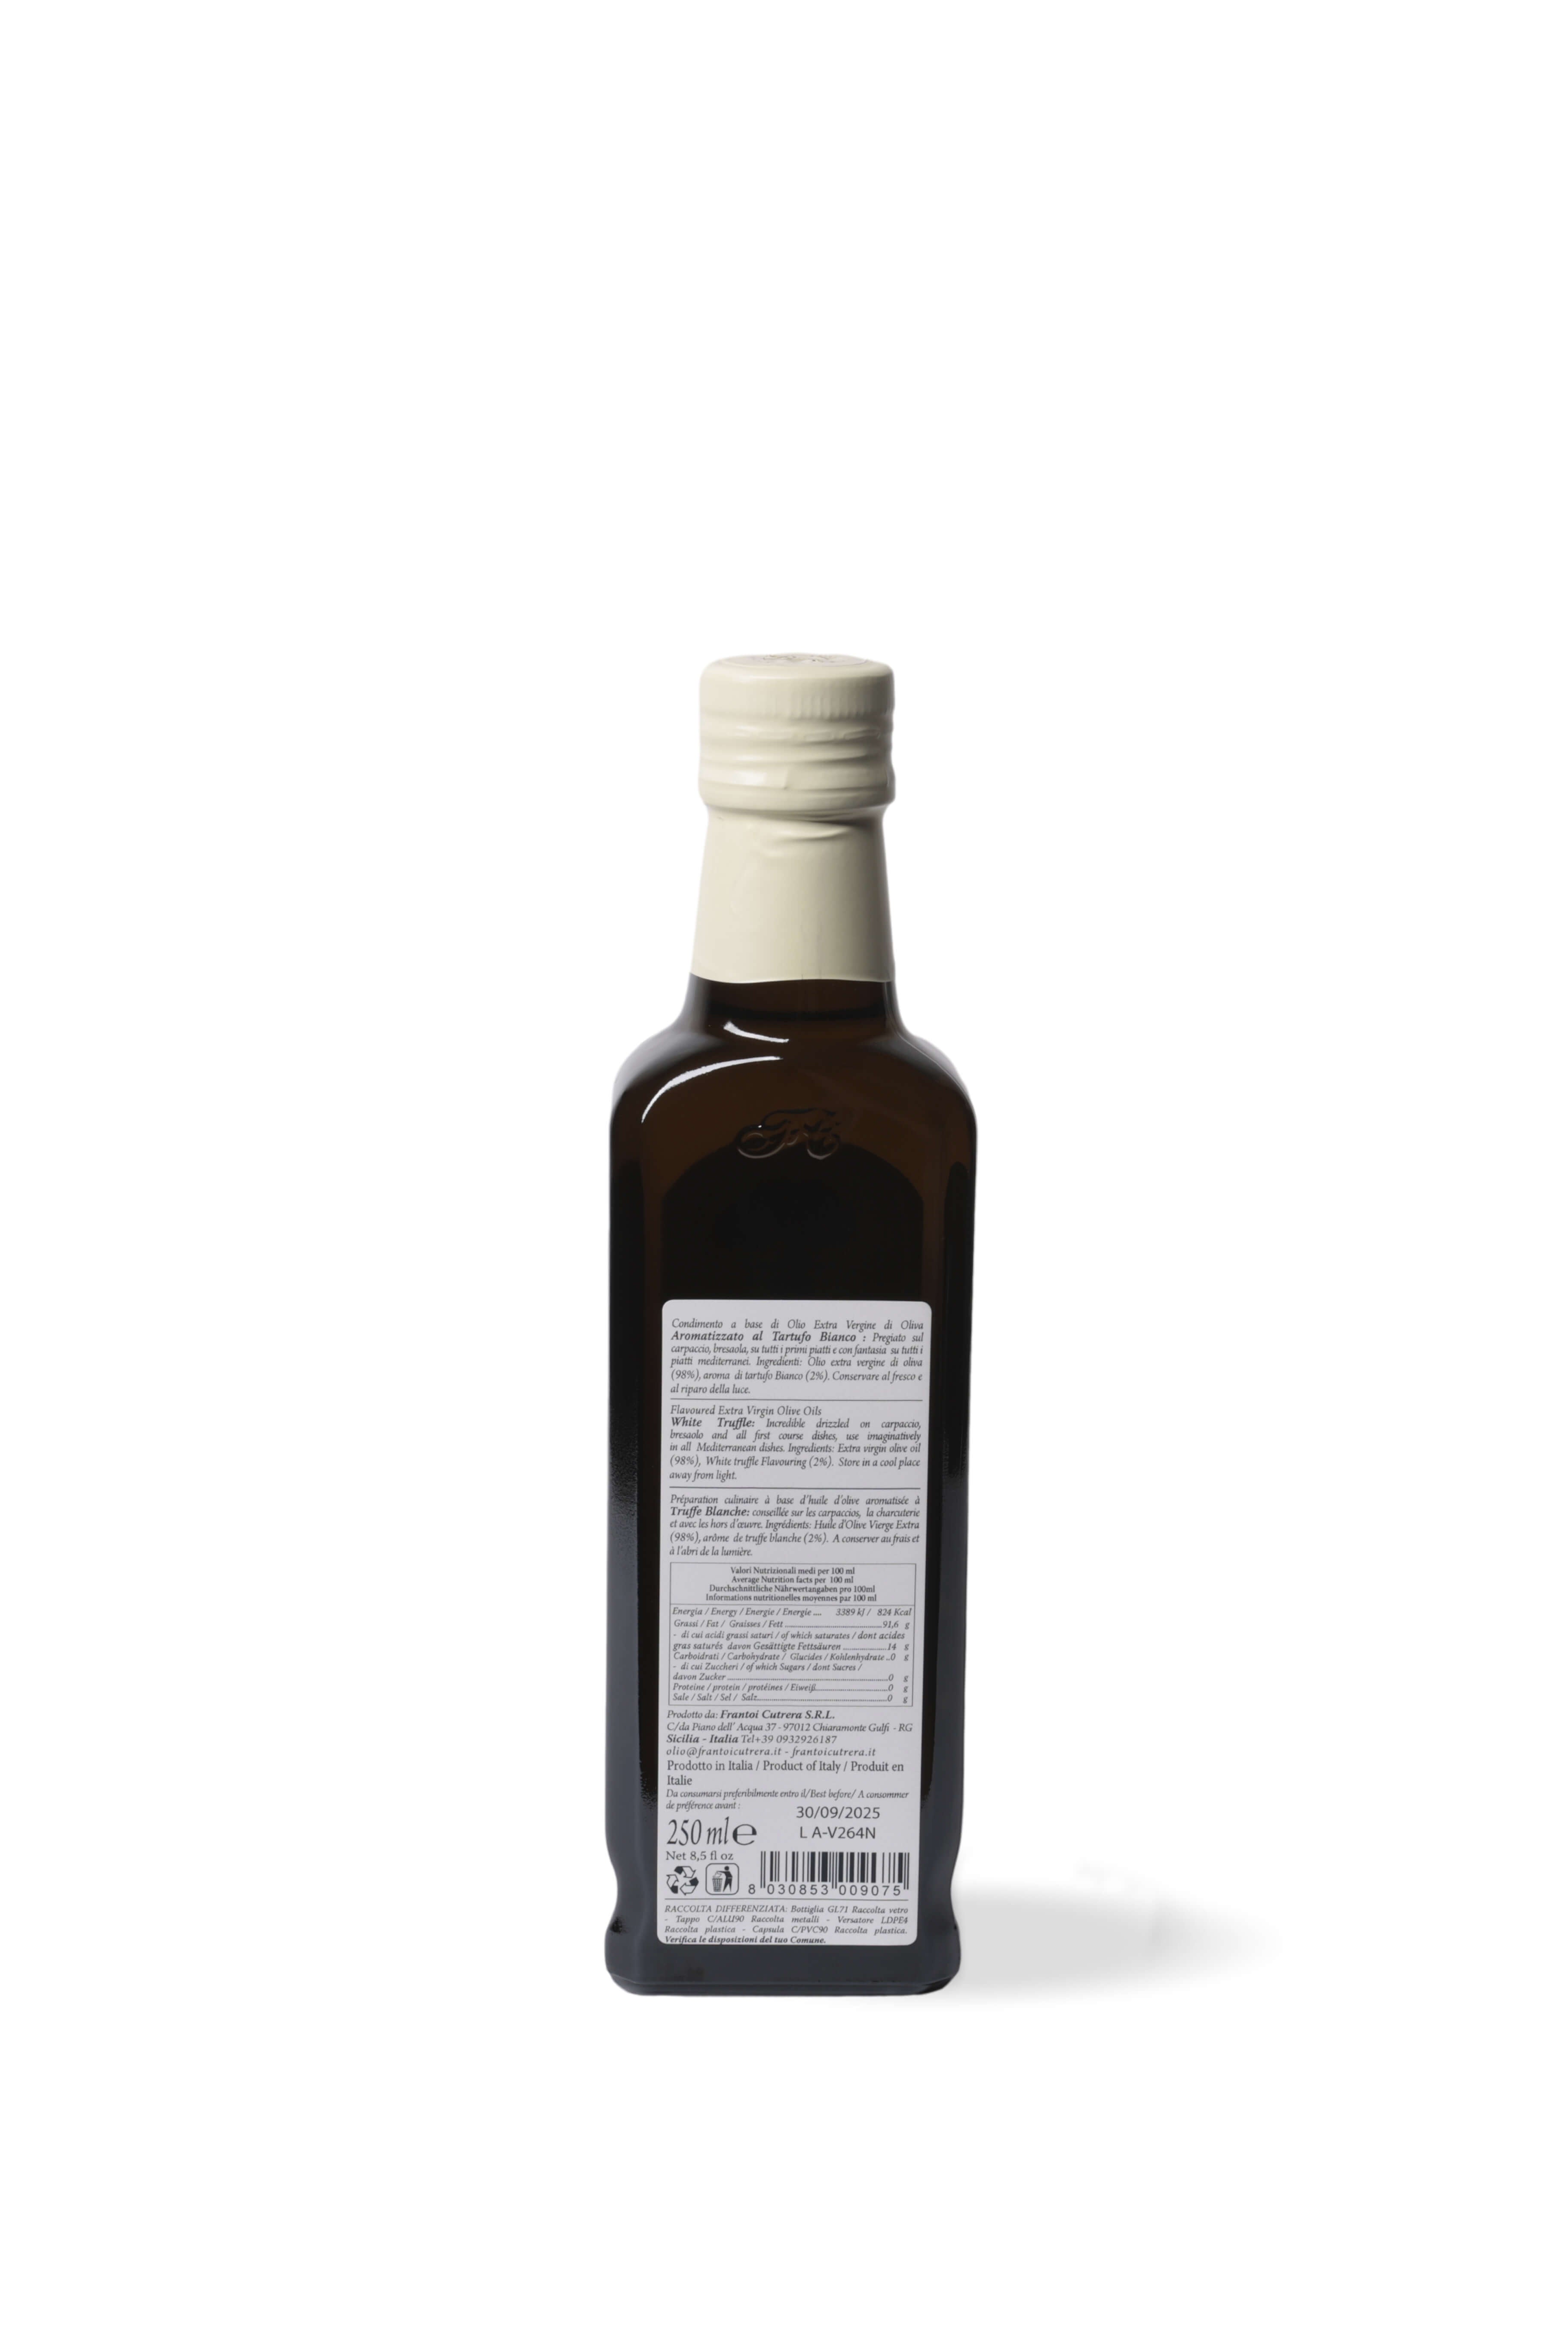 Condimento a base di olio extra vergine di oliva 98% aromatizzato al tartufo bianco